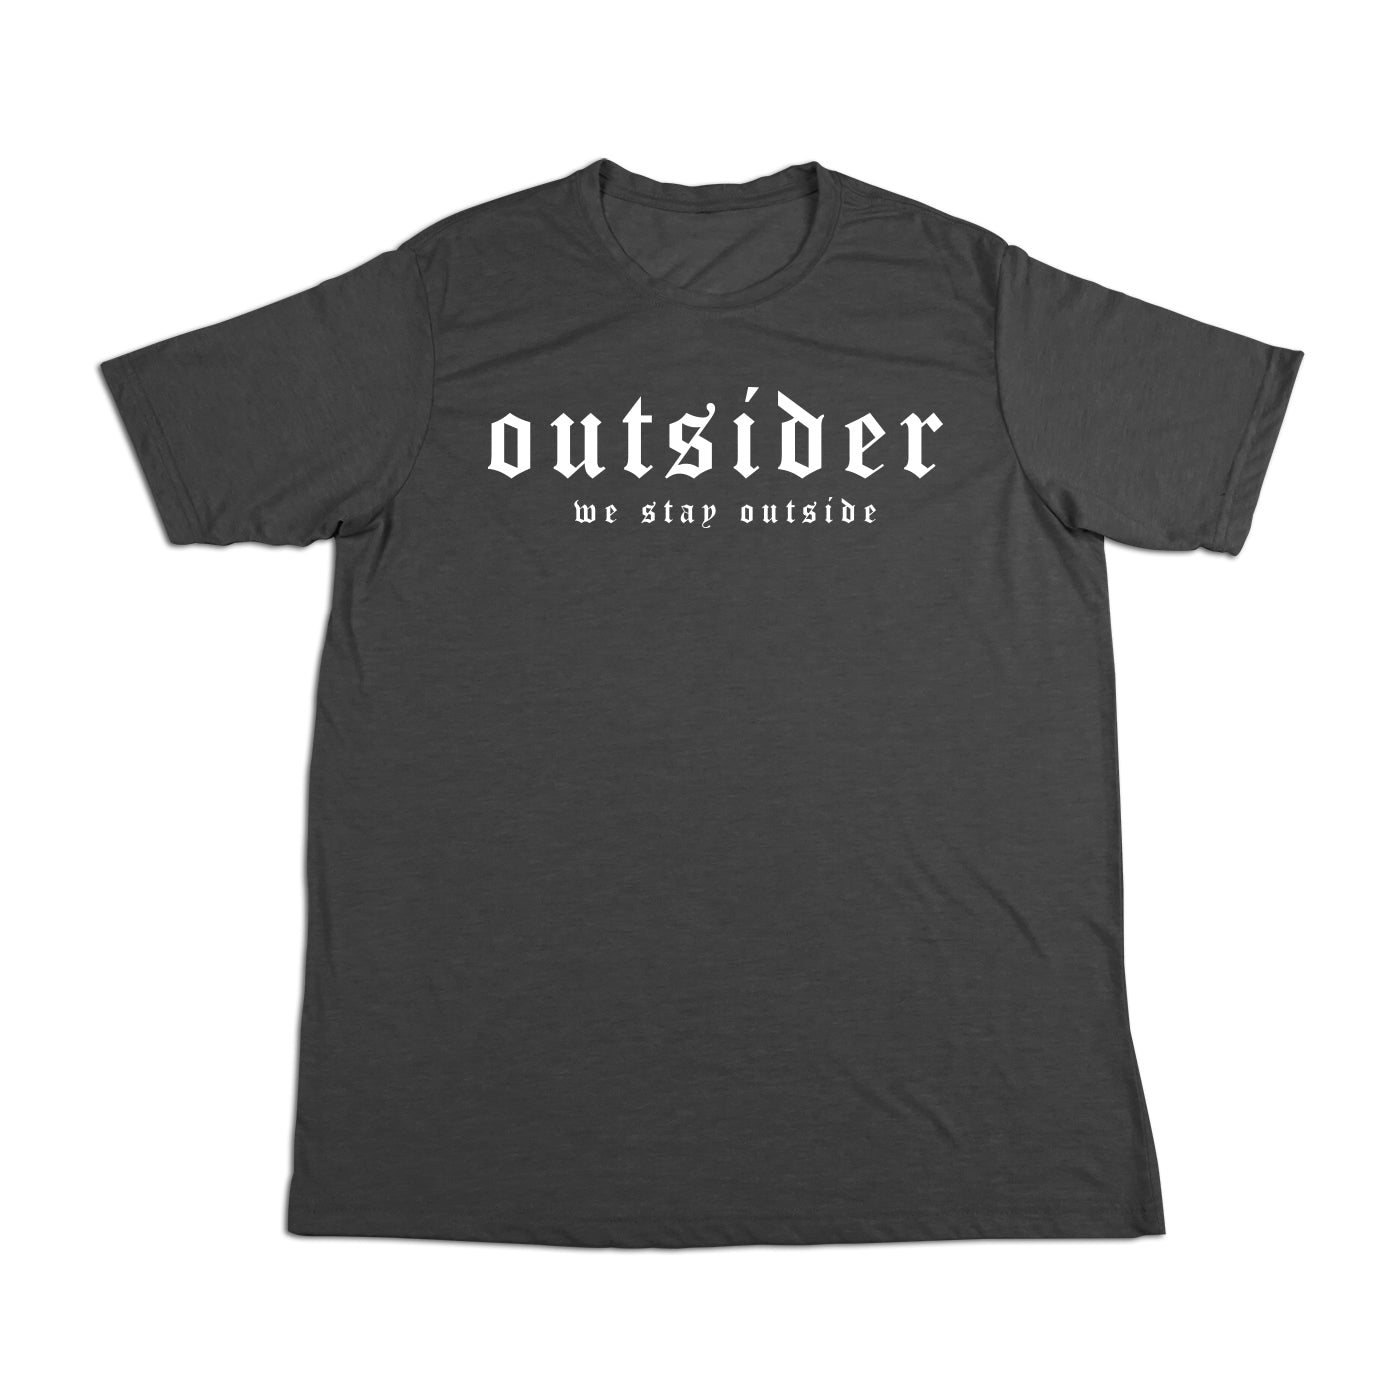 #OUTSIDER OG Soft Short Sleeve Shirt